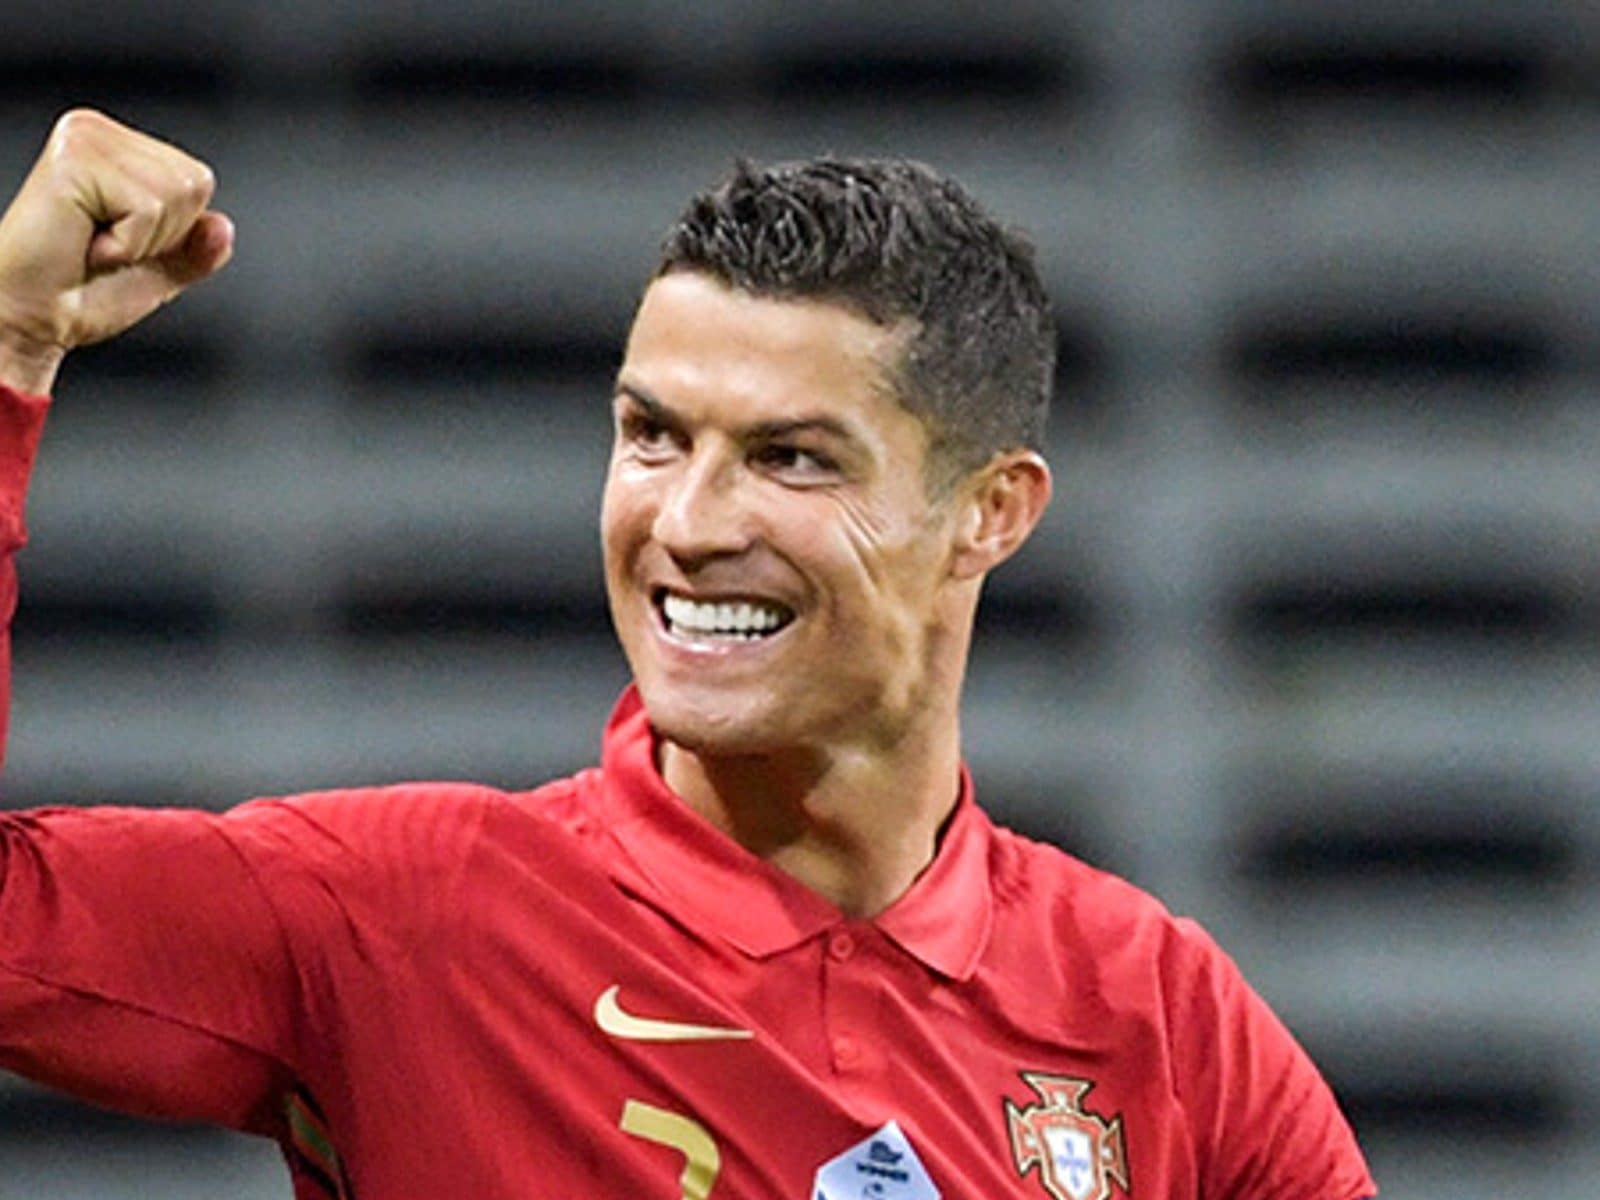 Euro2024: Ronaldo nunca pensou chegar ao jogo 200 e rejeita